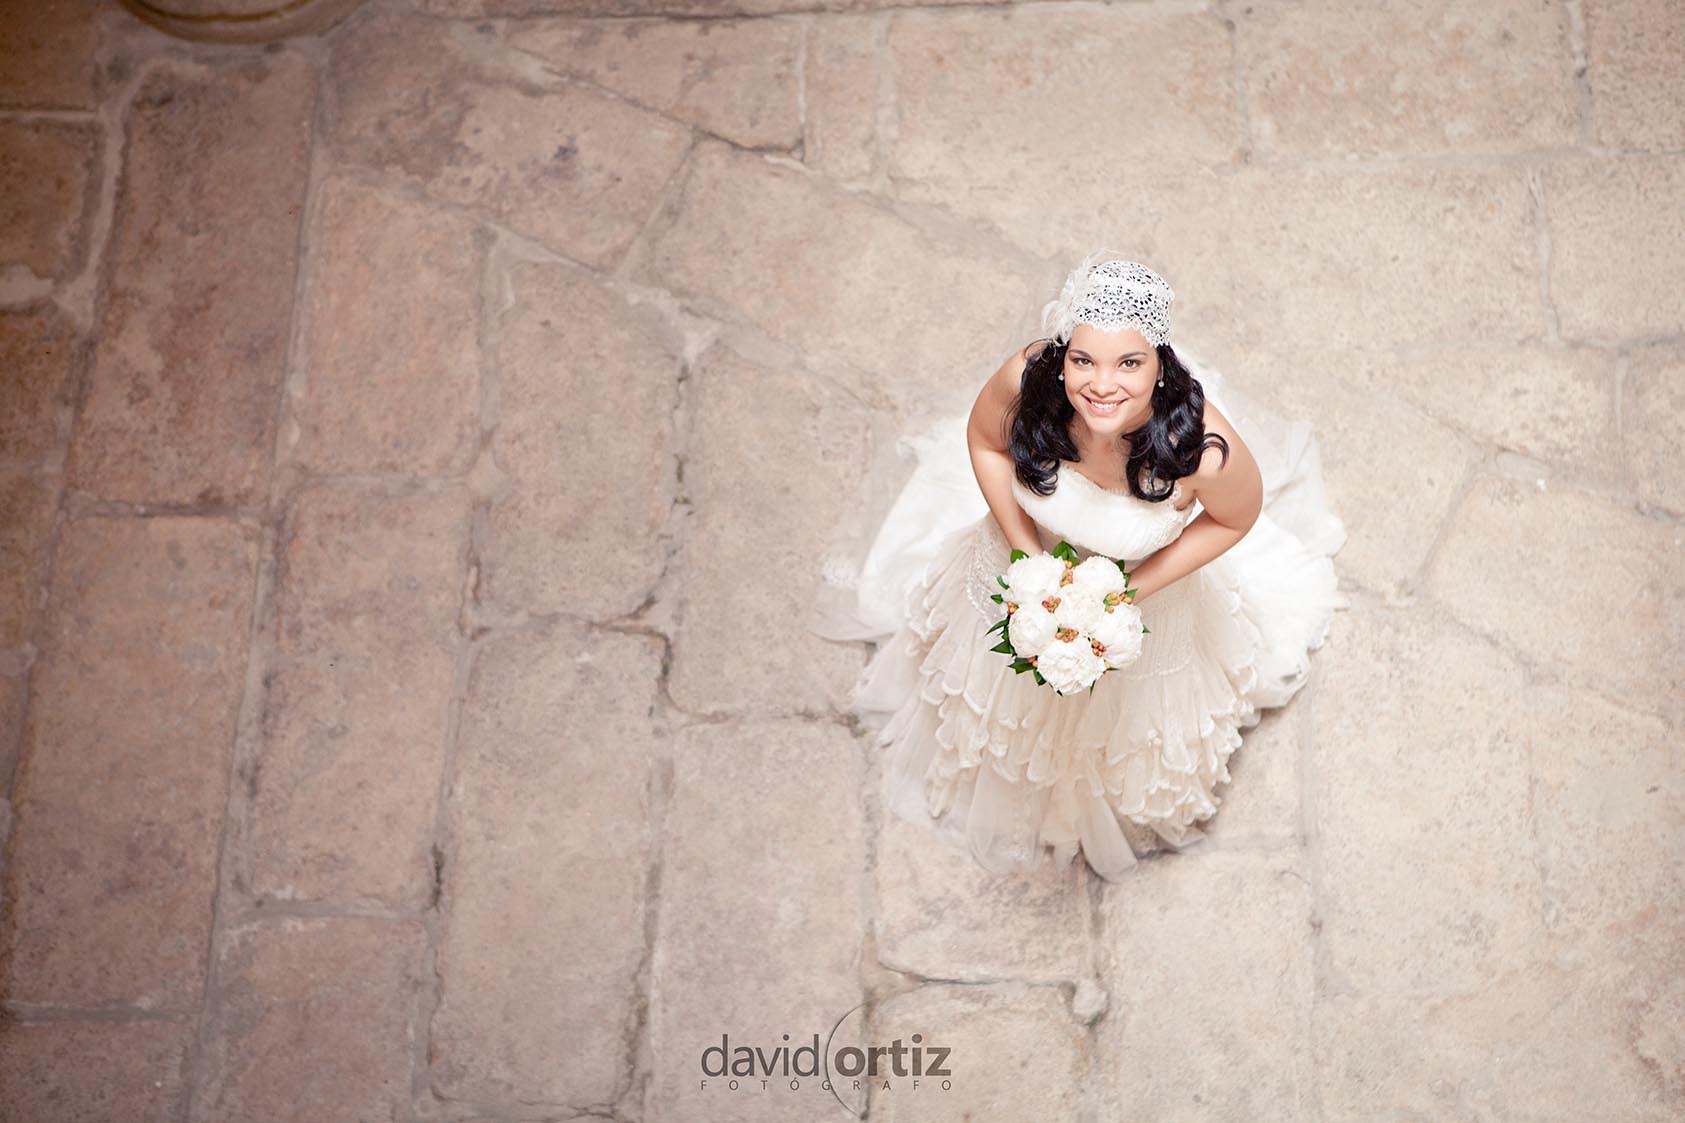 Fotografia y reportaje de la boda de Hassan y Montaña, realizado por David Ortiz Fotografo